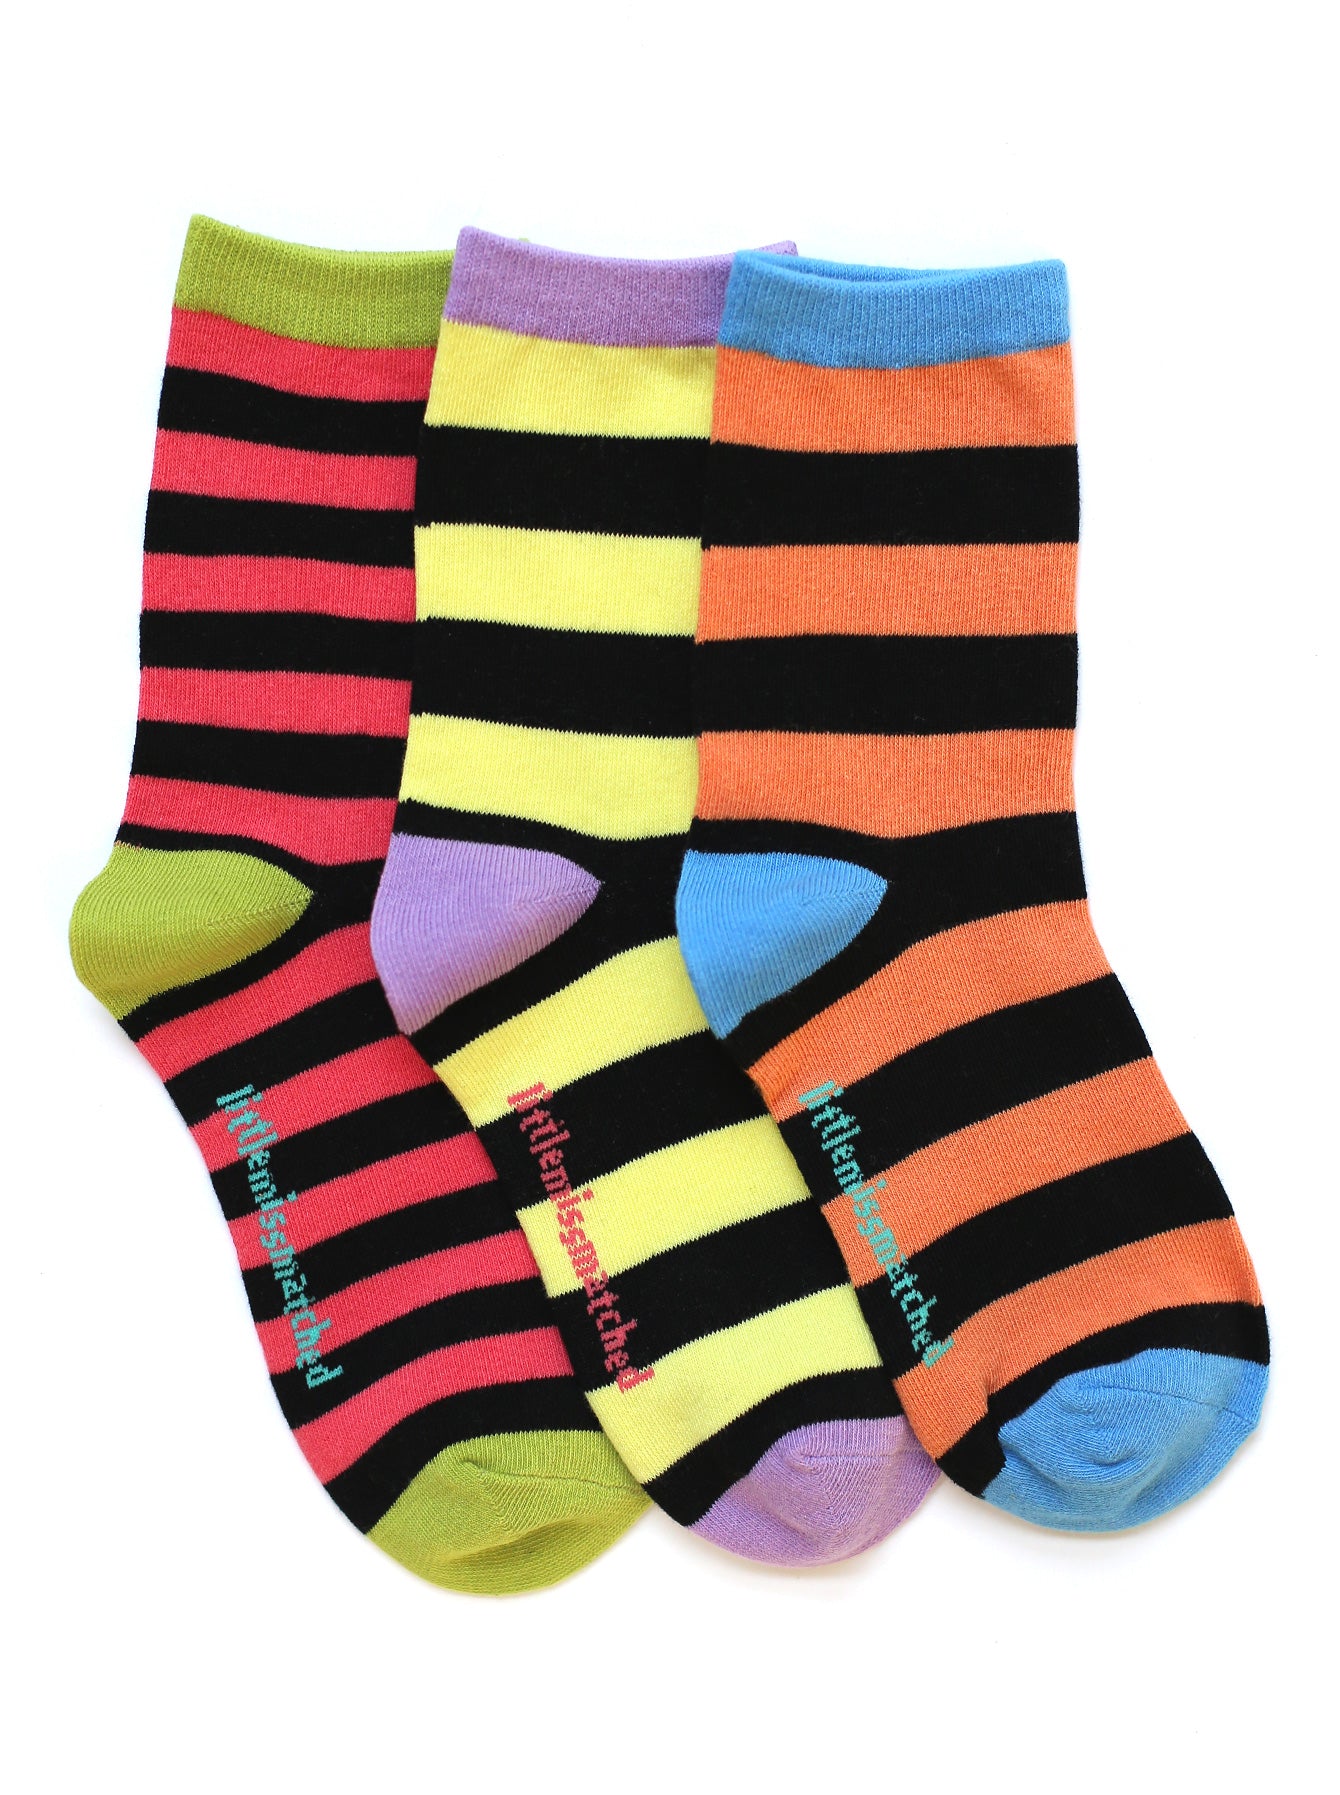 5pairs Striped Print Ankle Socks  Medias y calcetines, Calcetines lindos,  Calcetines de chicas